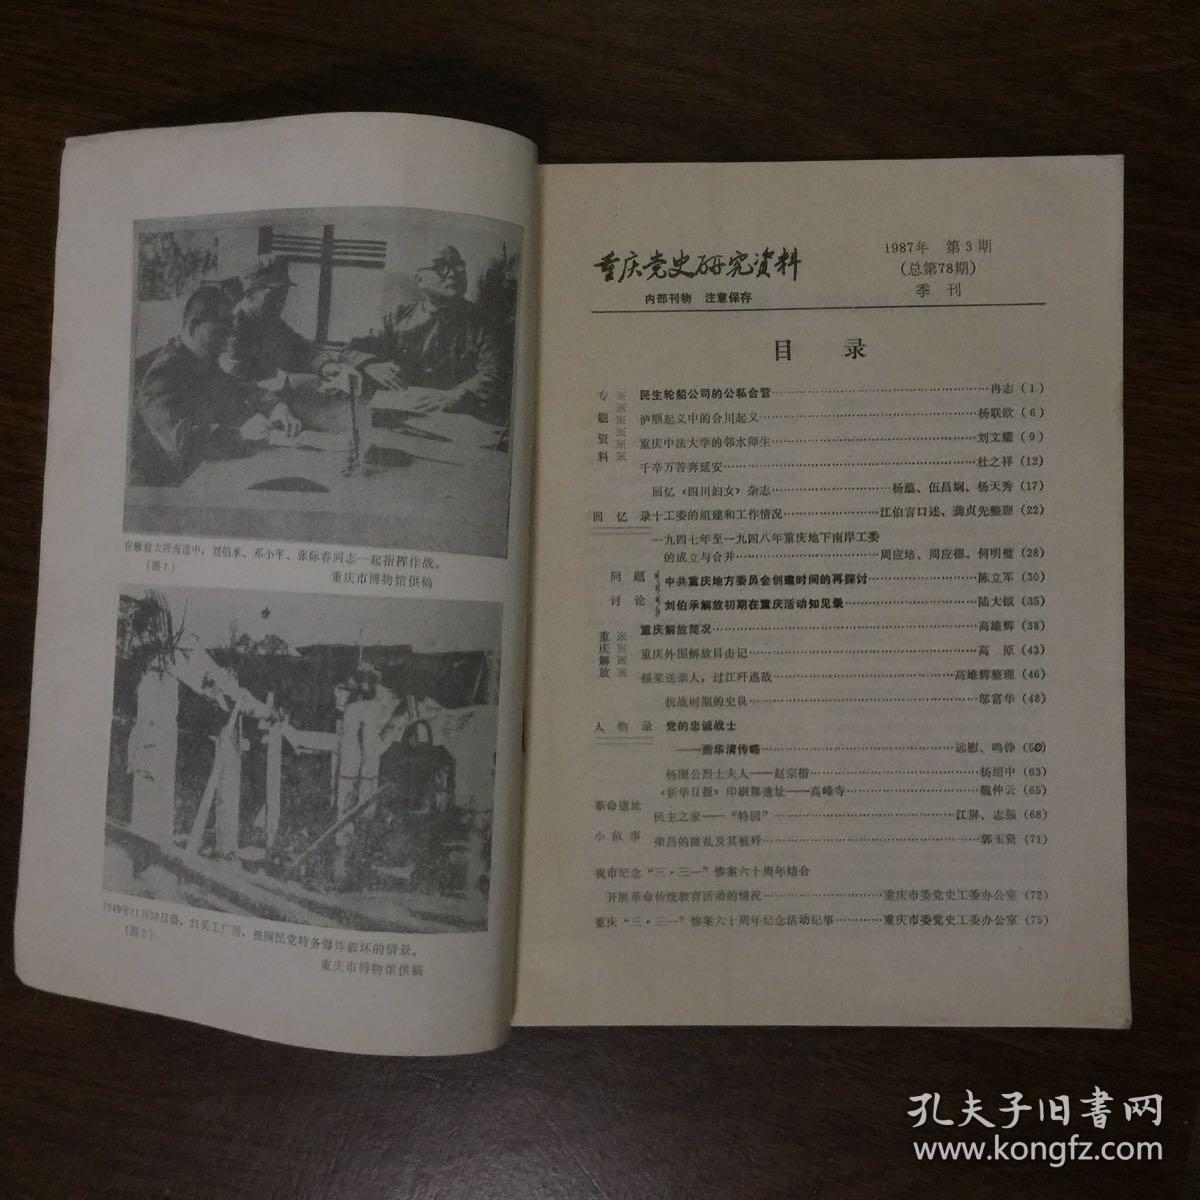 重庆党史研究资料（1987年3期）